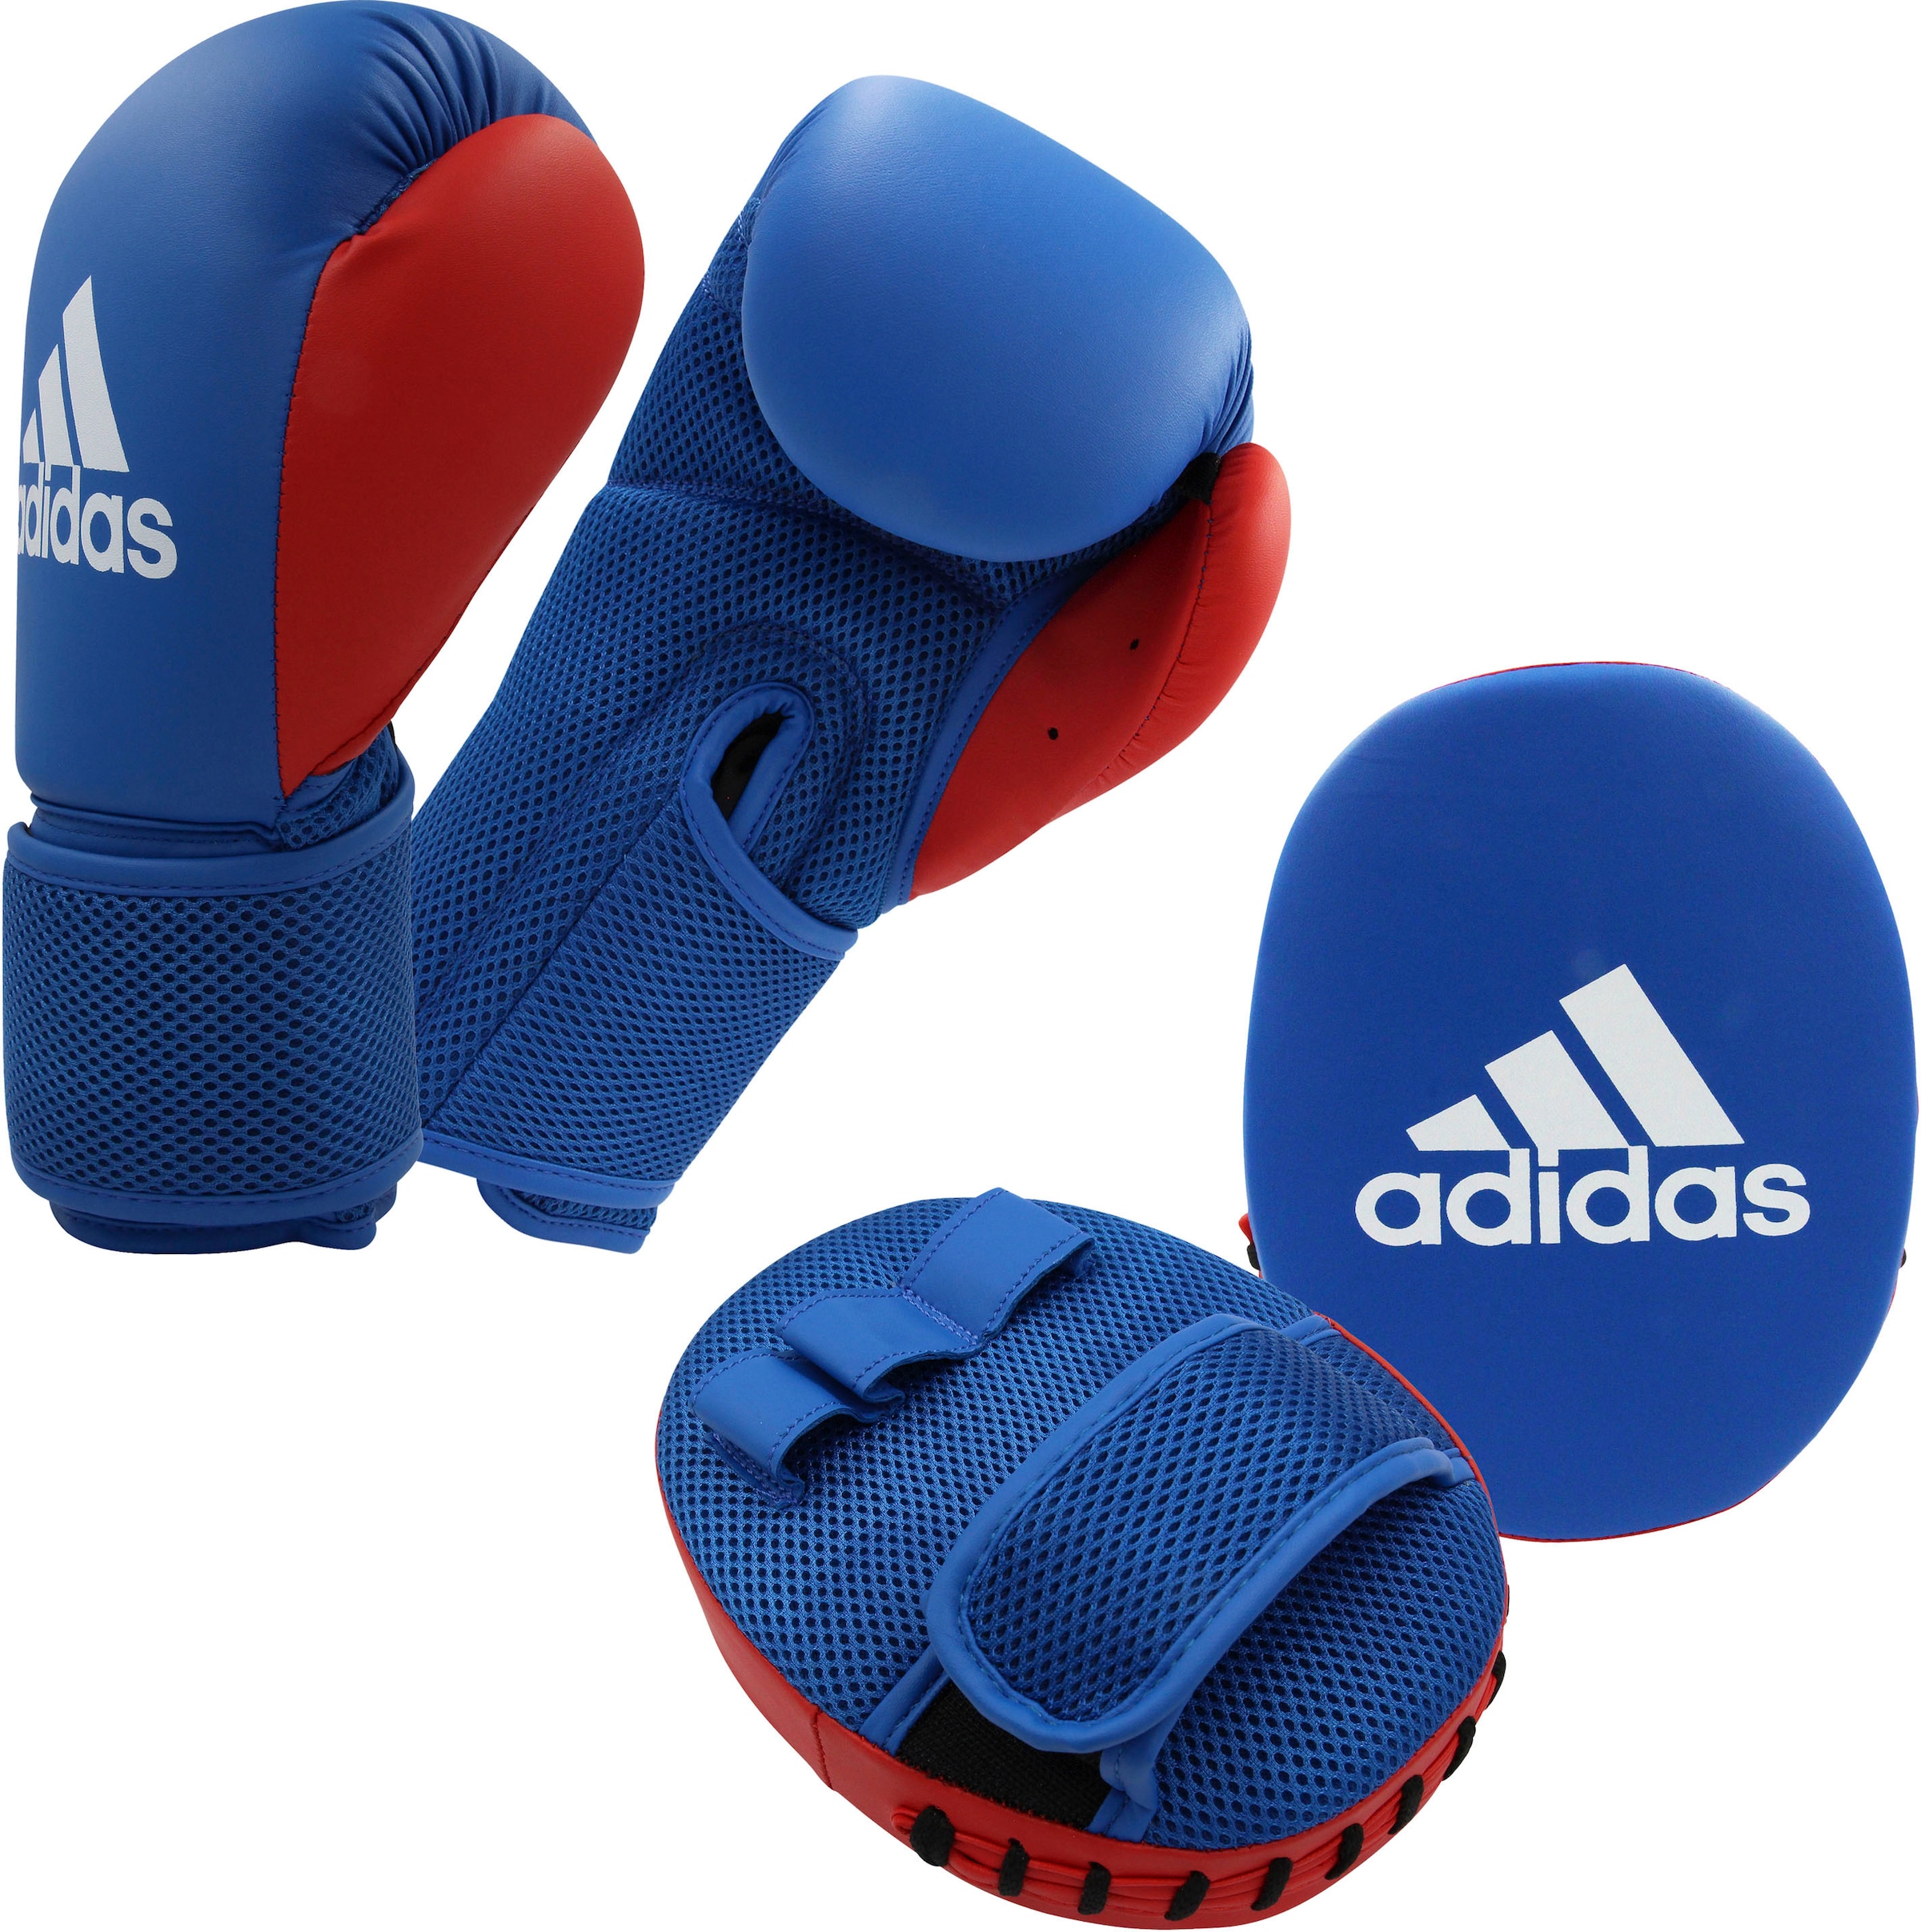 »Kids 2« adidas OTTO bei Boxing Pratze bestellen Kit Performance